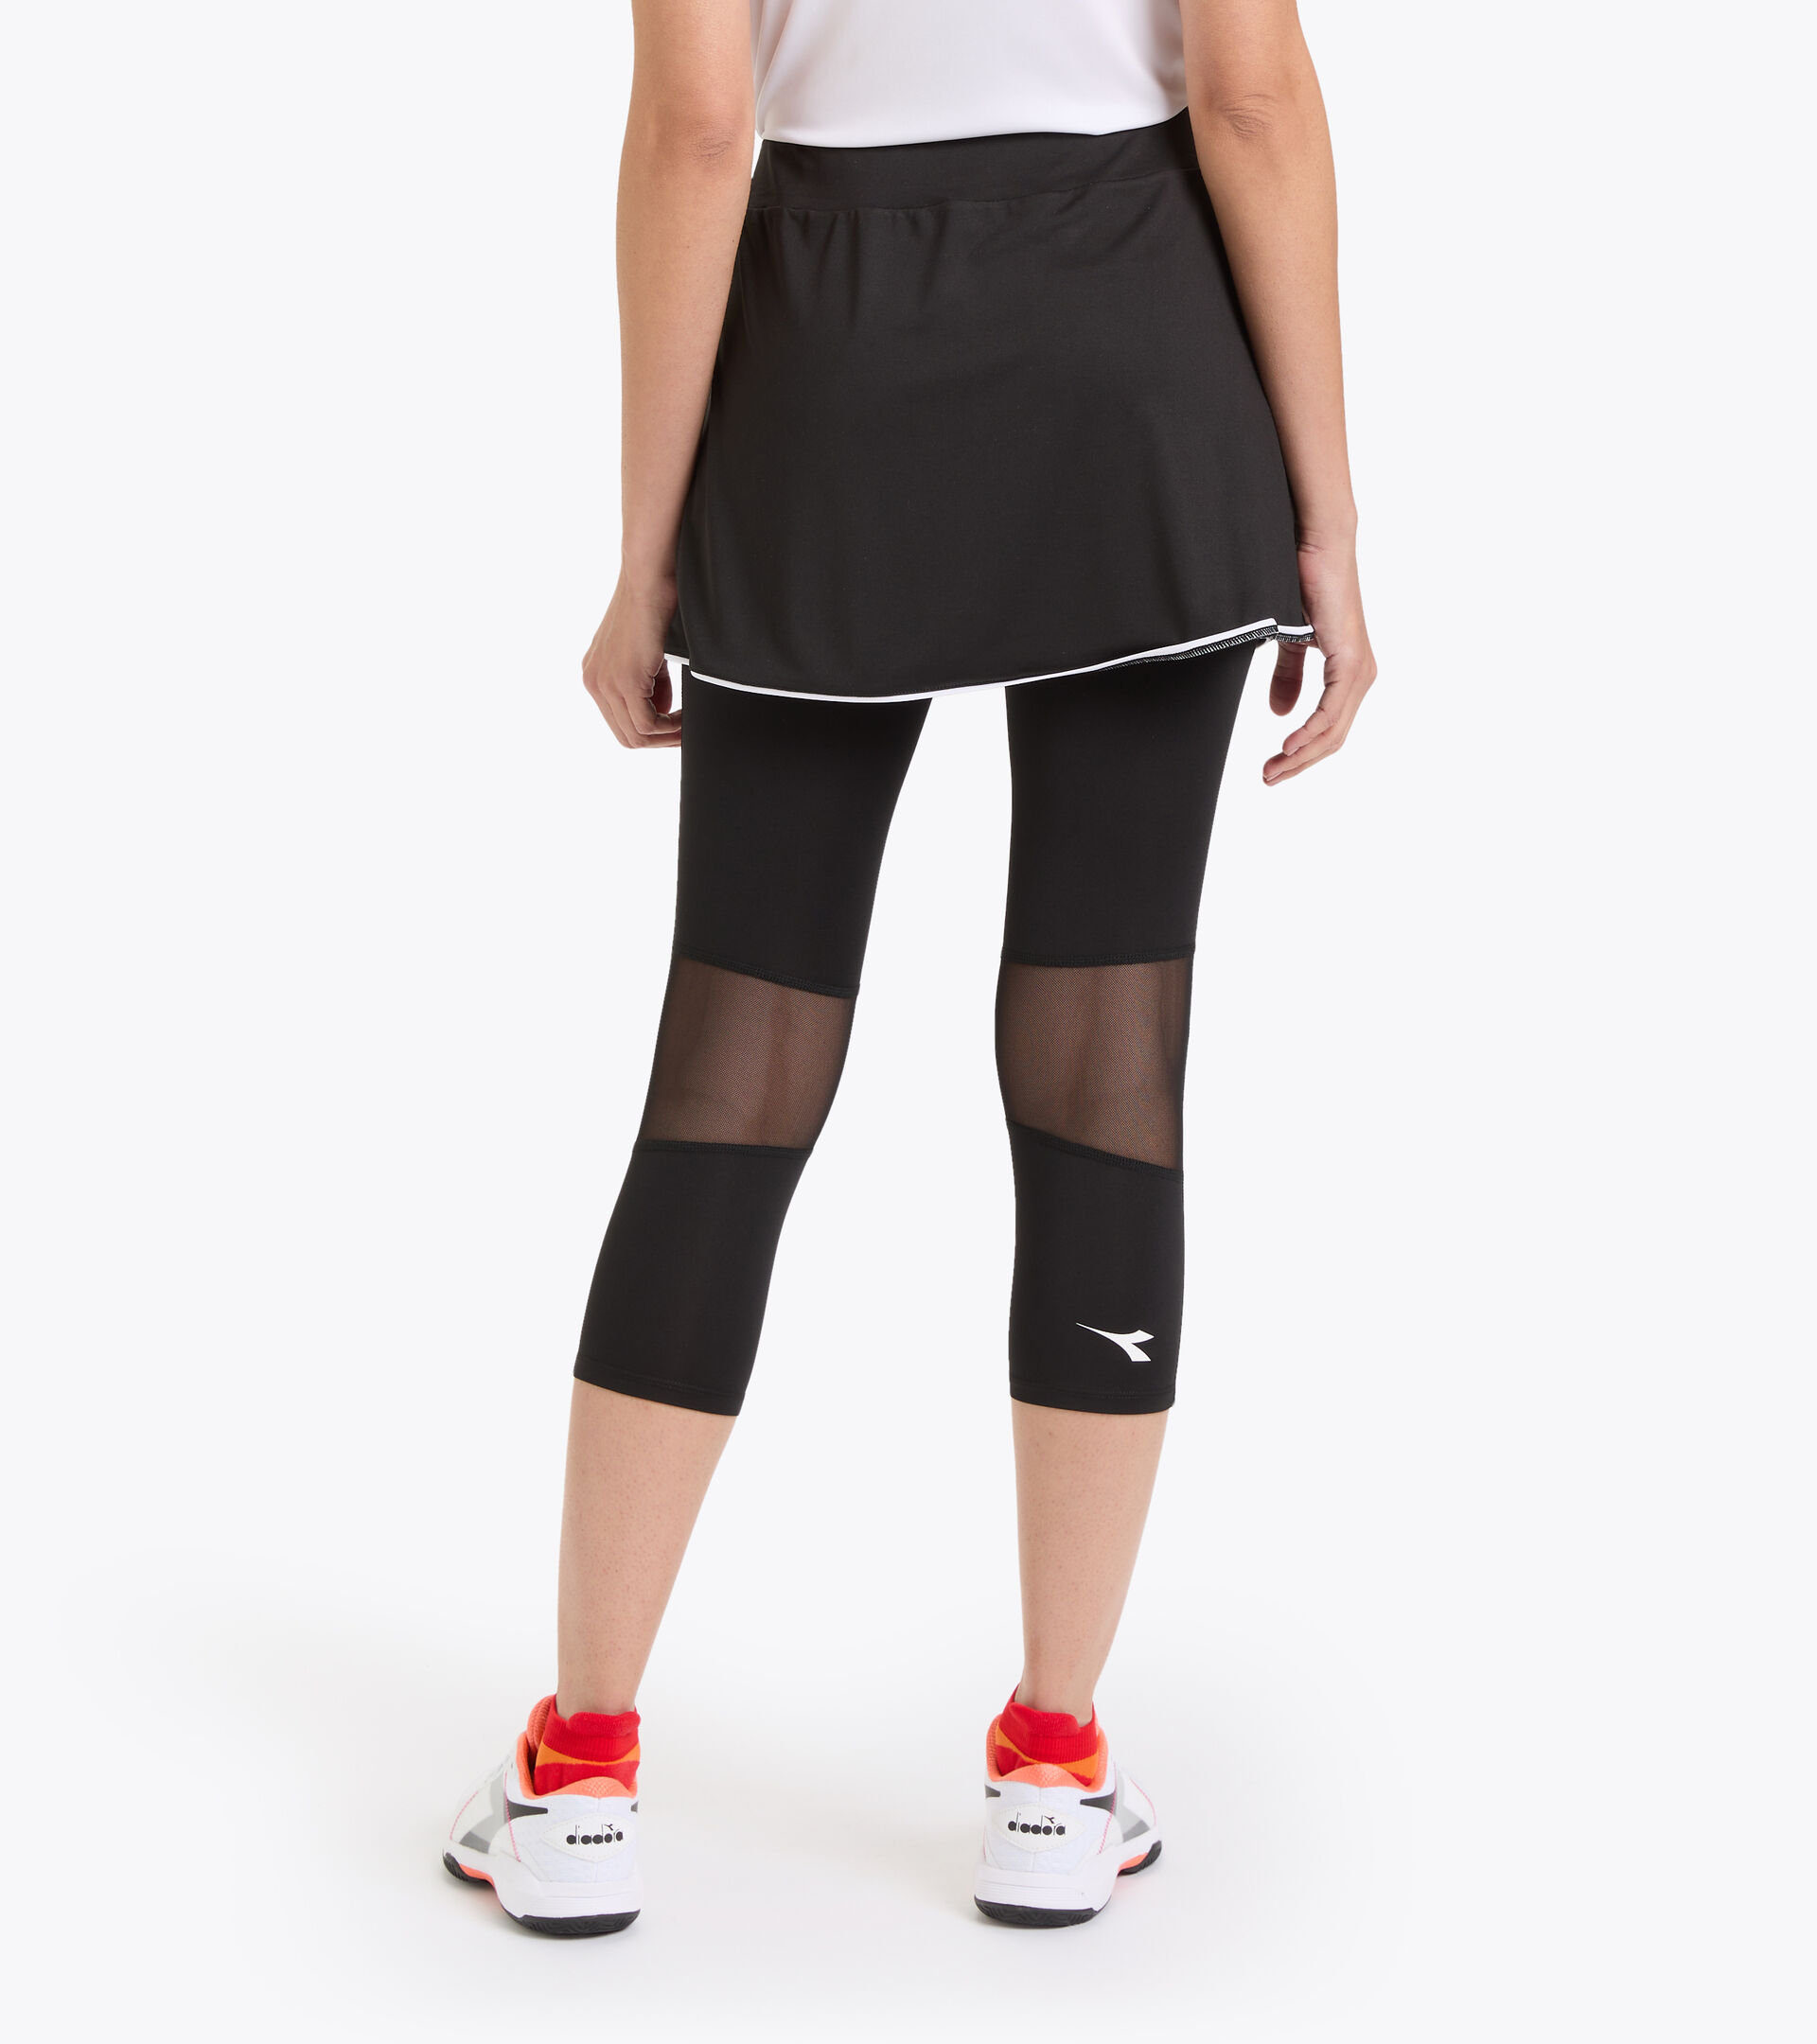 L. POWER SKIRT Polyester tennis skirt - Women - Diadora Online Store US